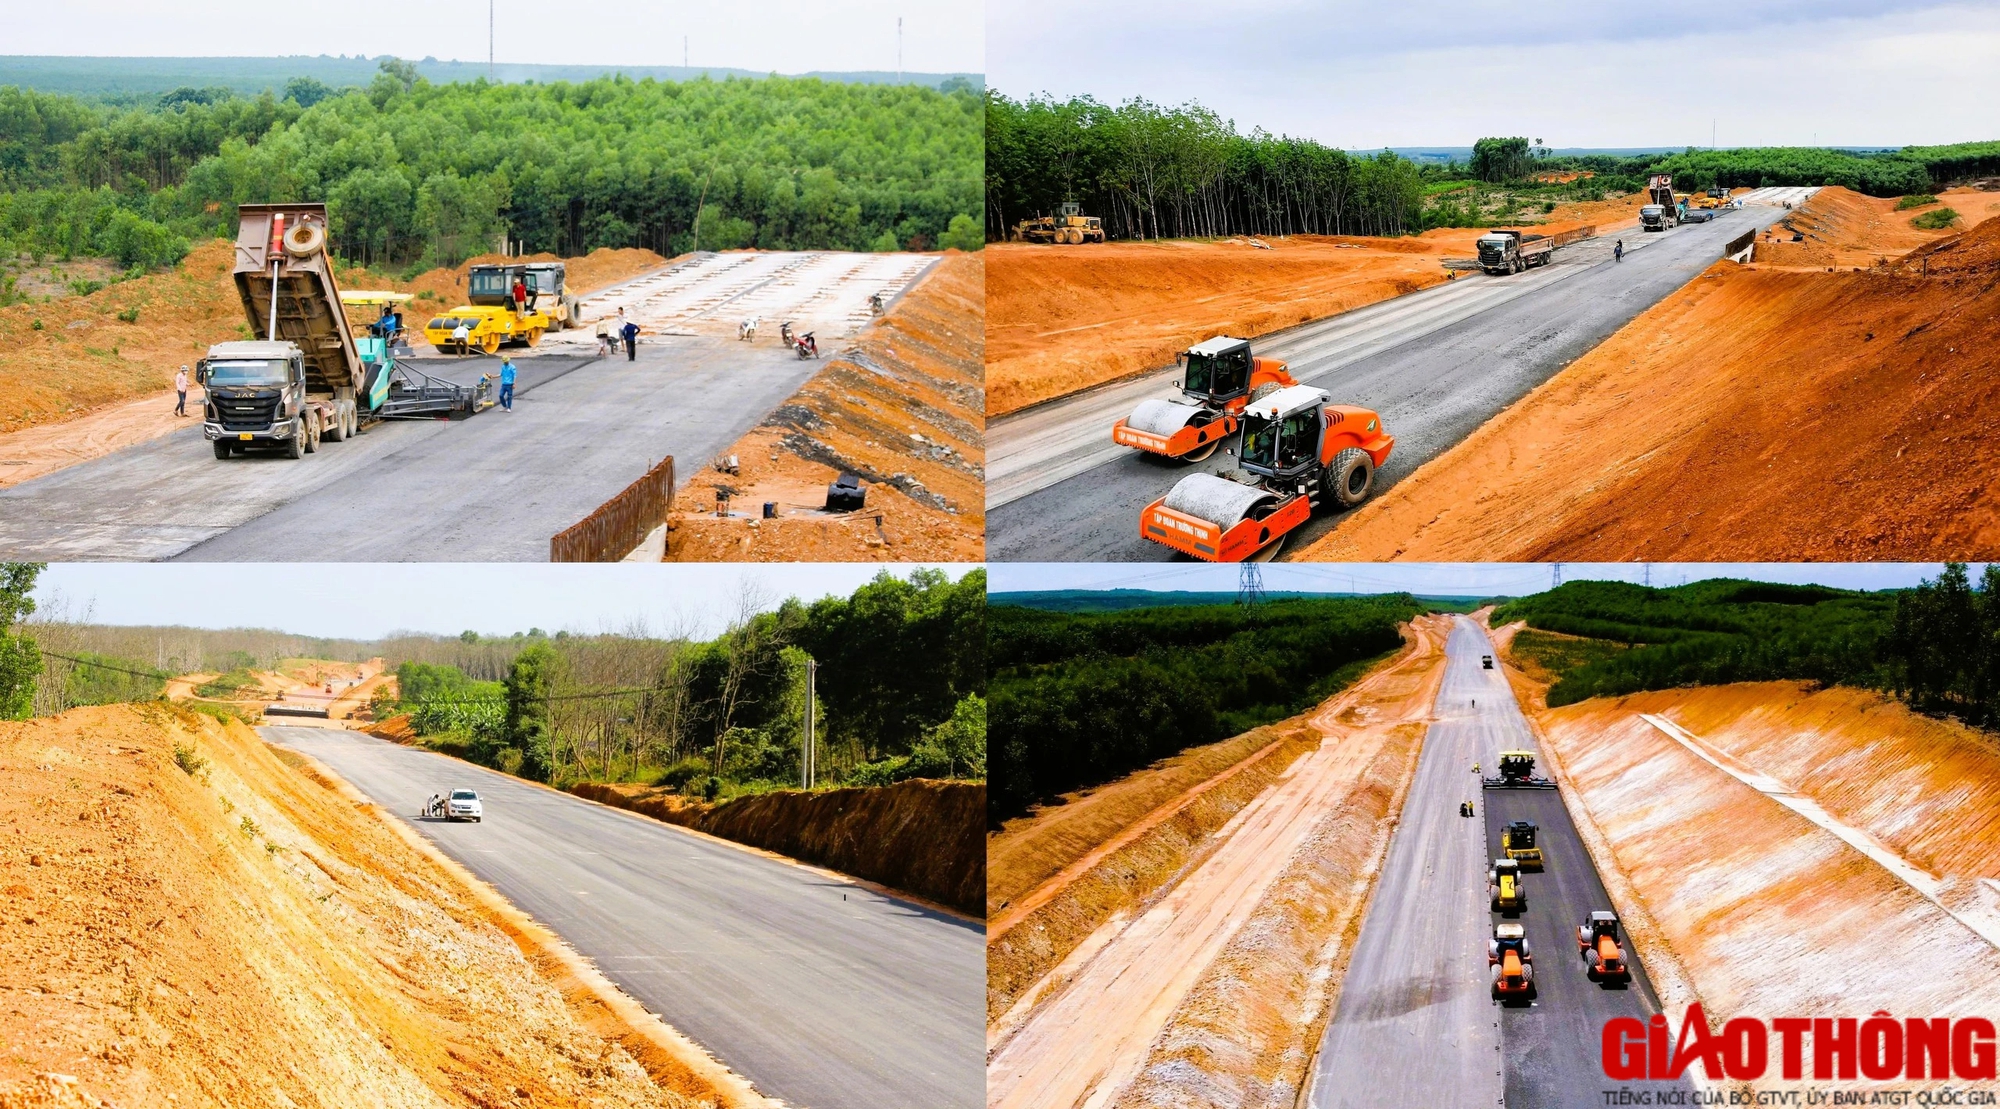 Dự án cao tốc Vạn Ninh - Cam Lộ hoàn thiện hơn 22km nền đường, thảm nhựa 14km- Ảnh 2.